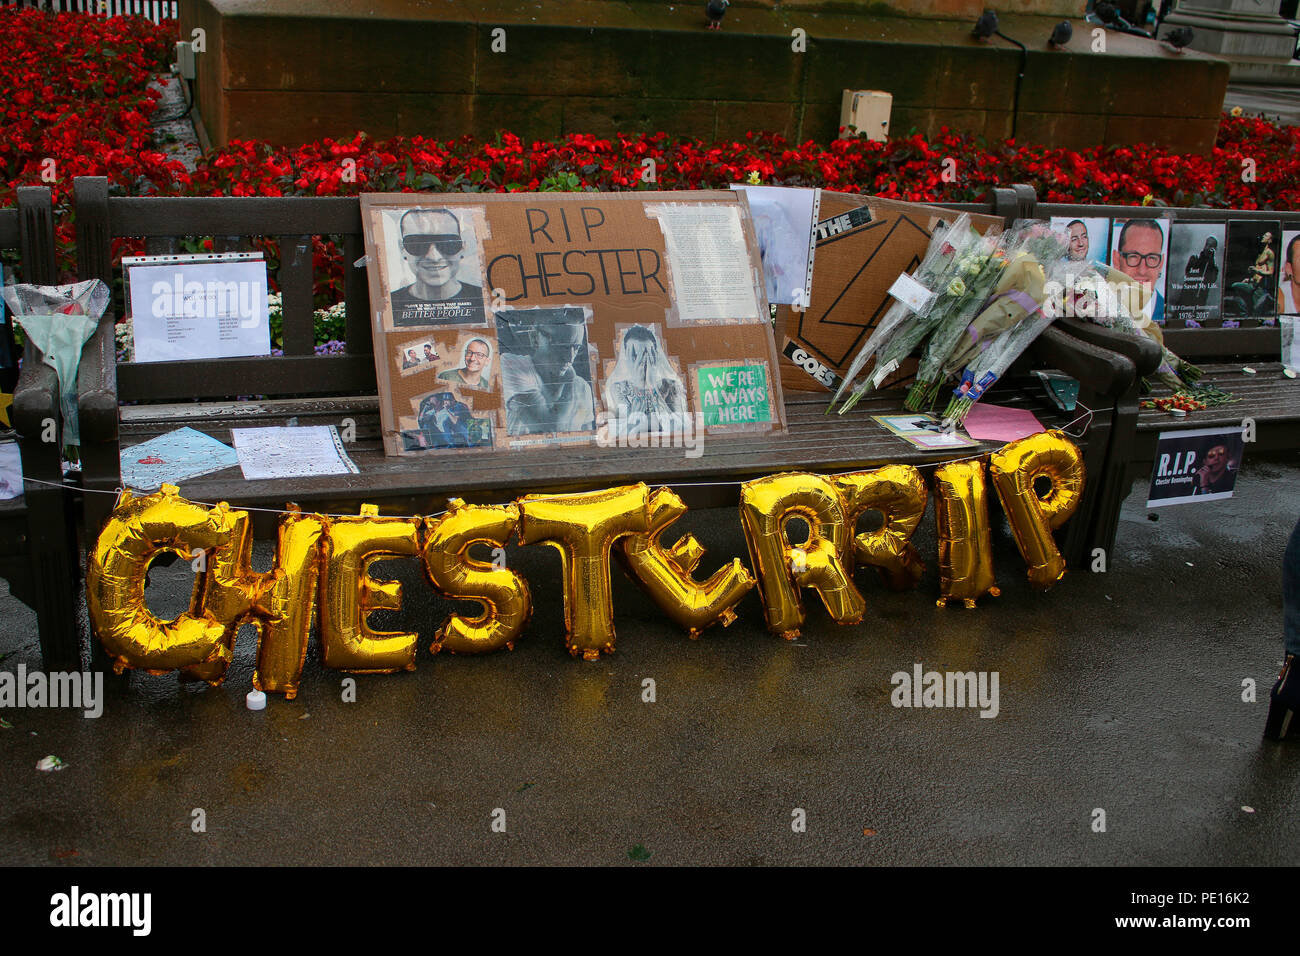 Gedenken an den verstorbenen Popstar Chester Bennington (Linkin Park), Glasgow, Schottland/ Scozia. Foto Stock